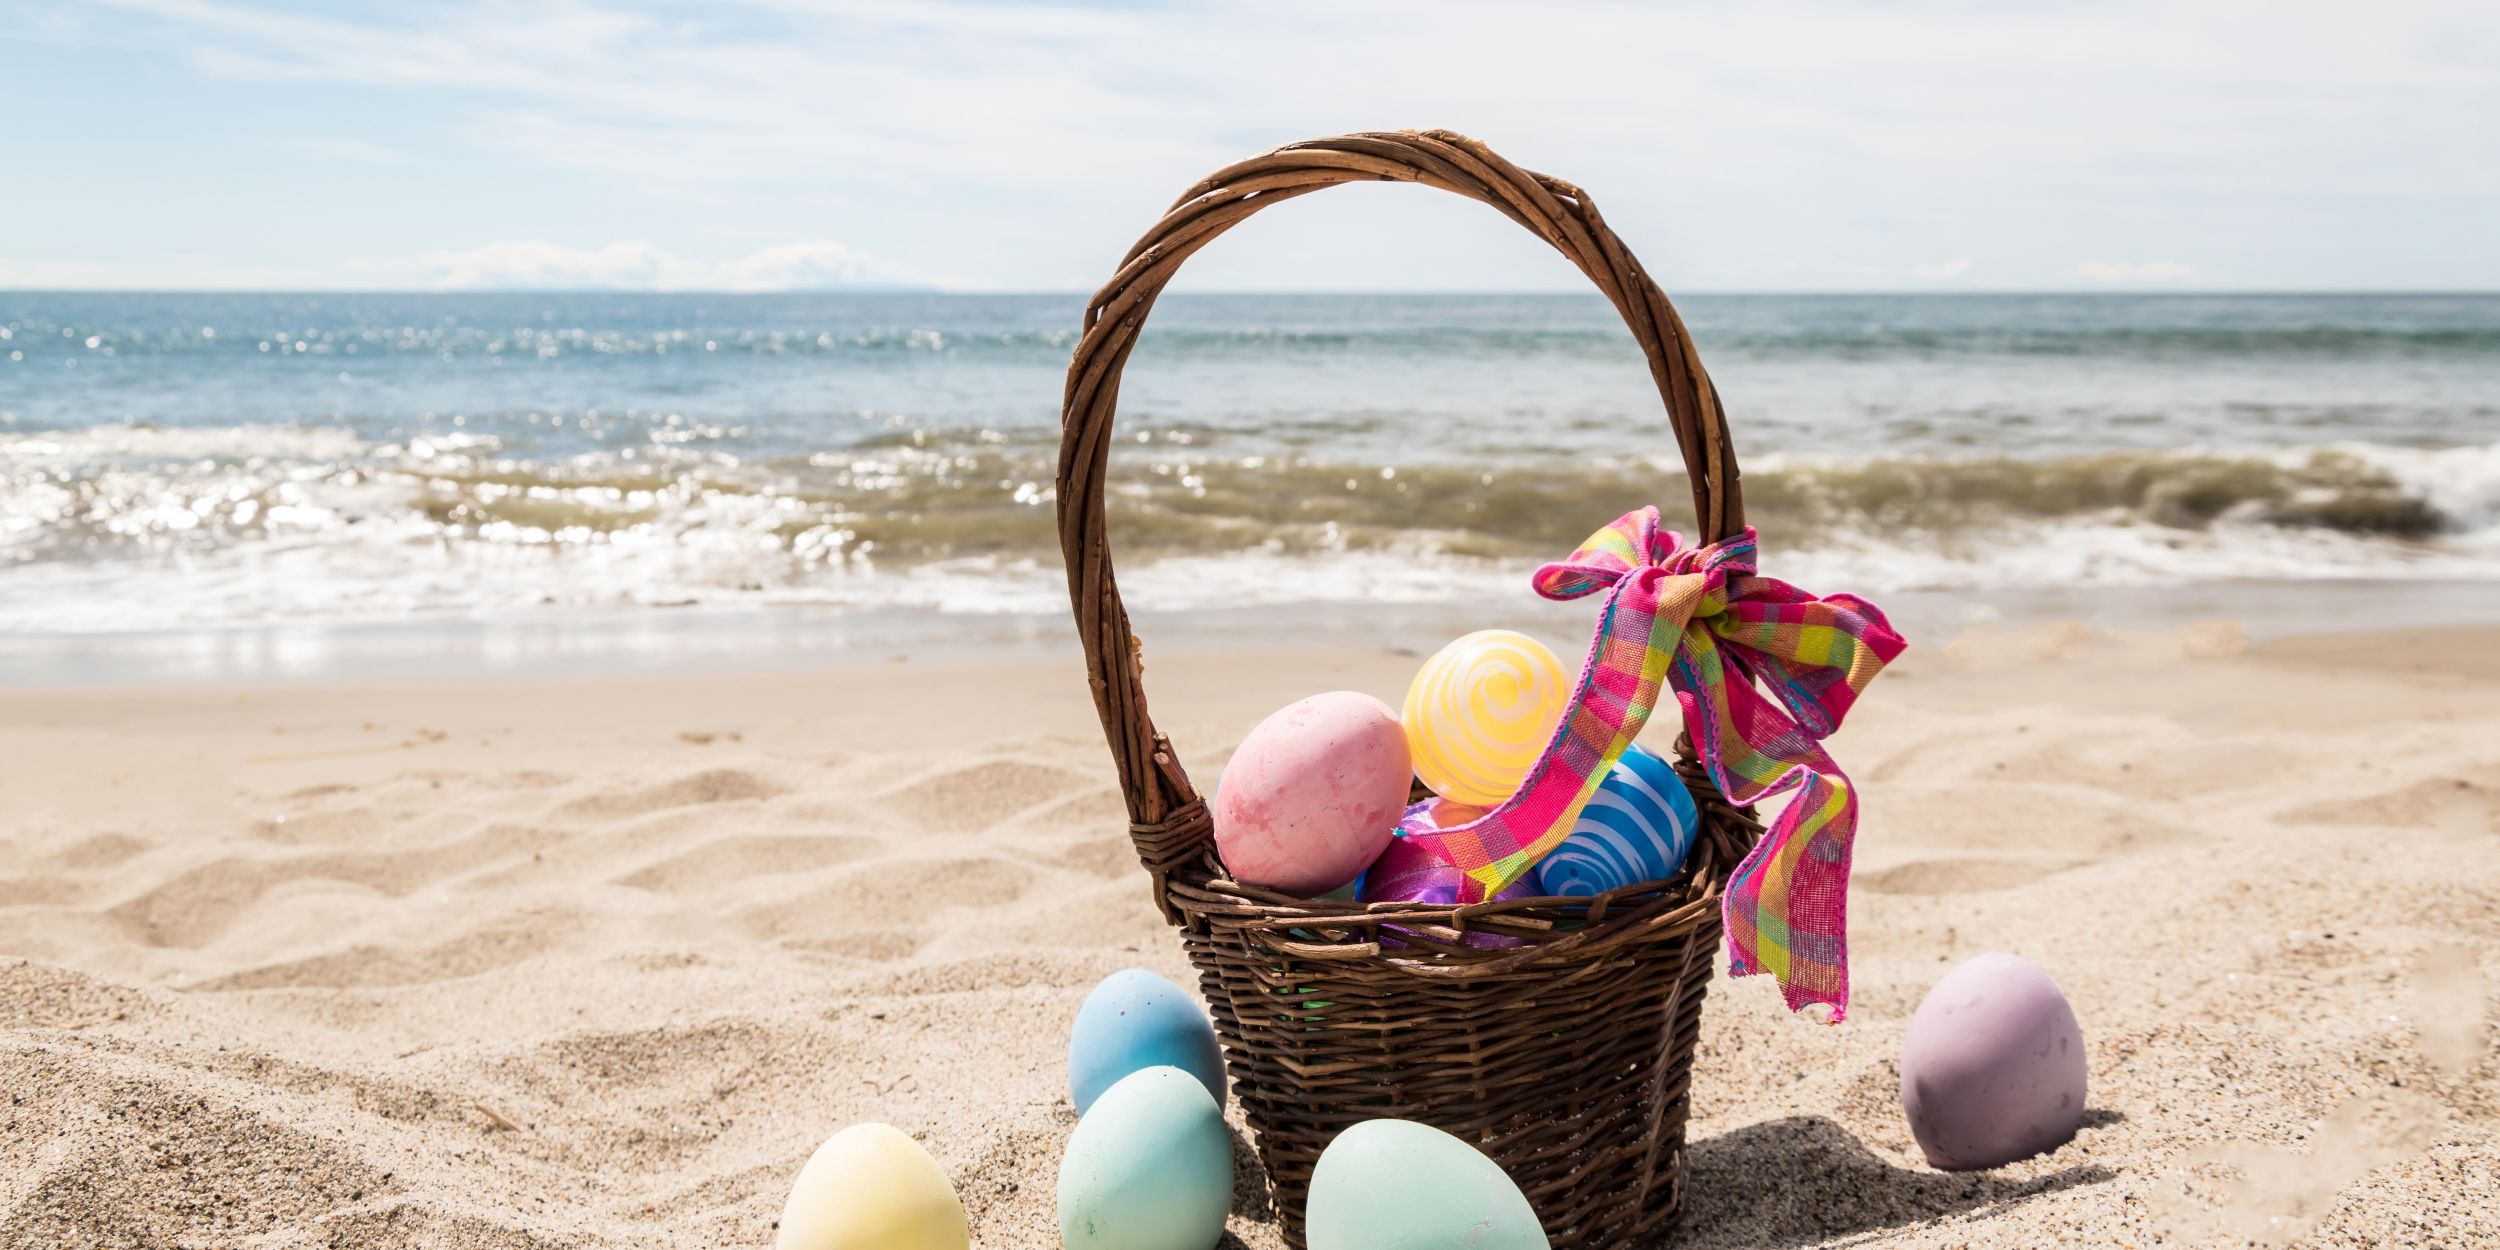 A Basket Of Eggs On A Beach